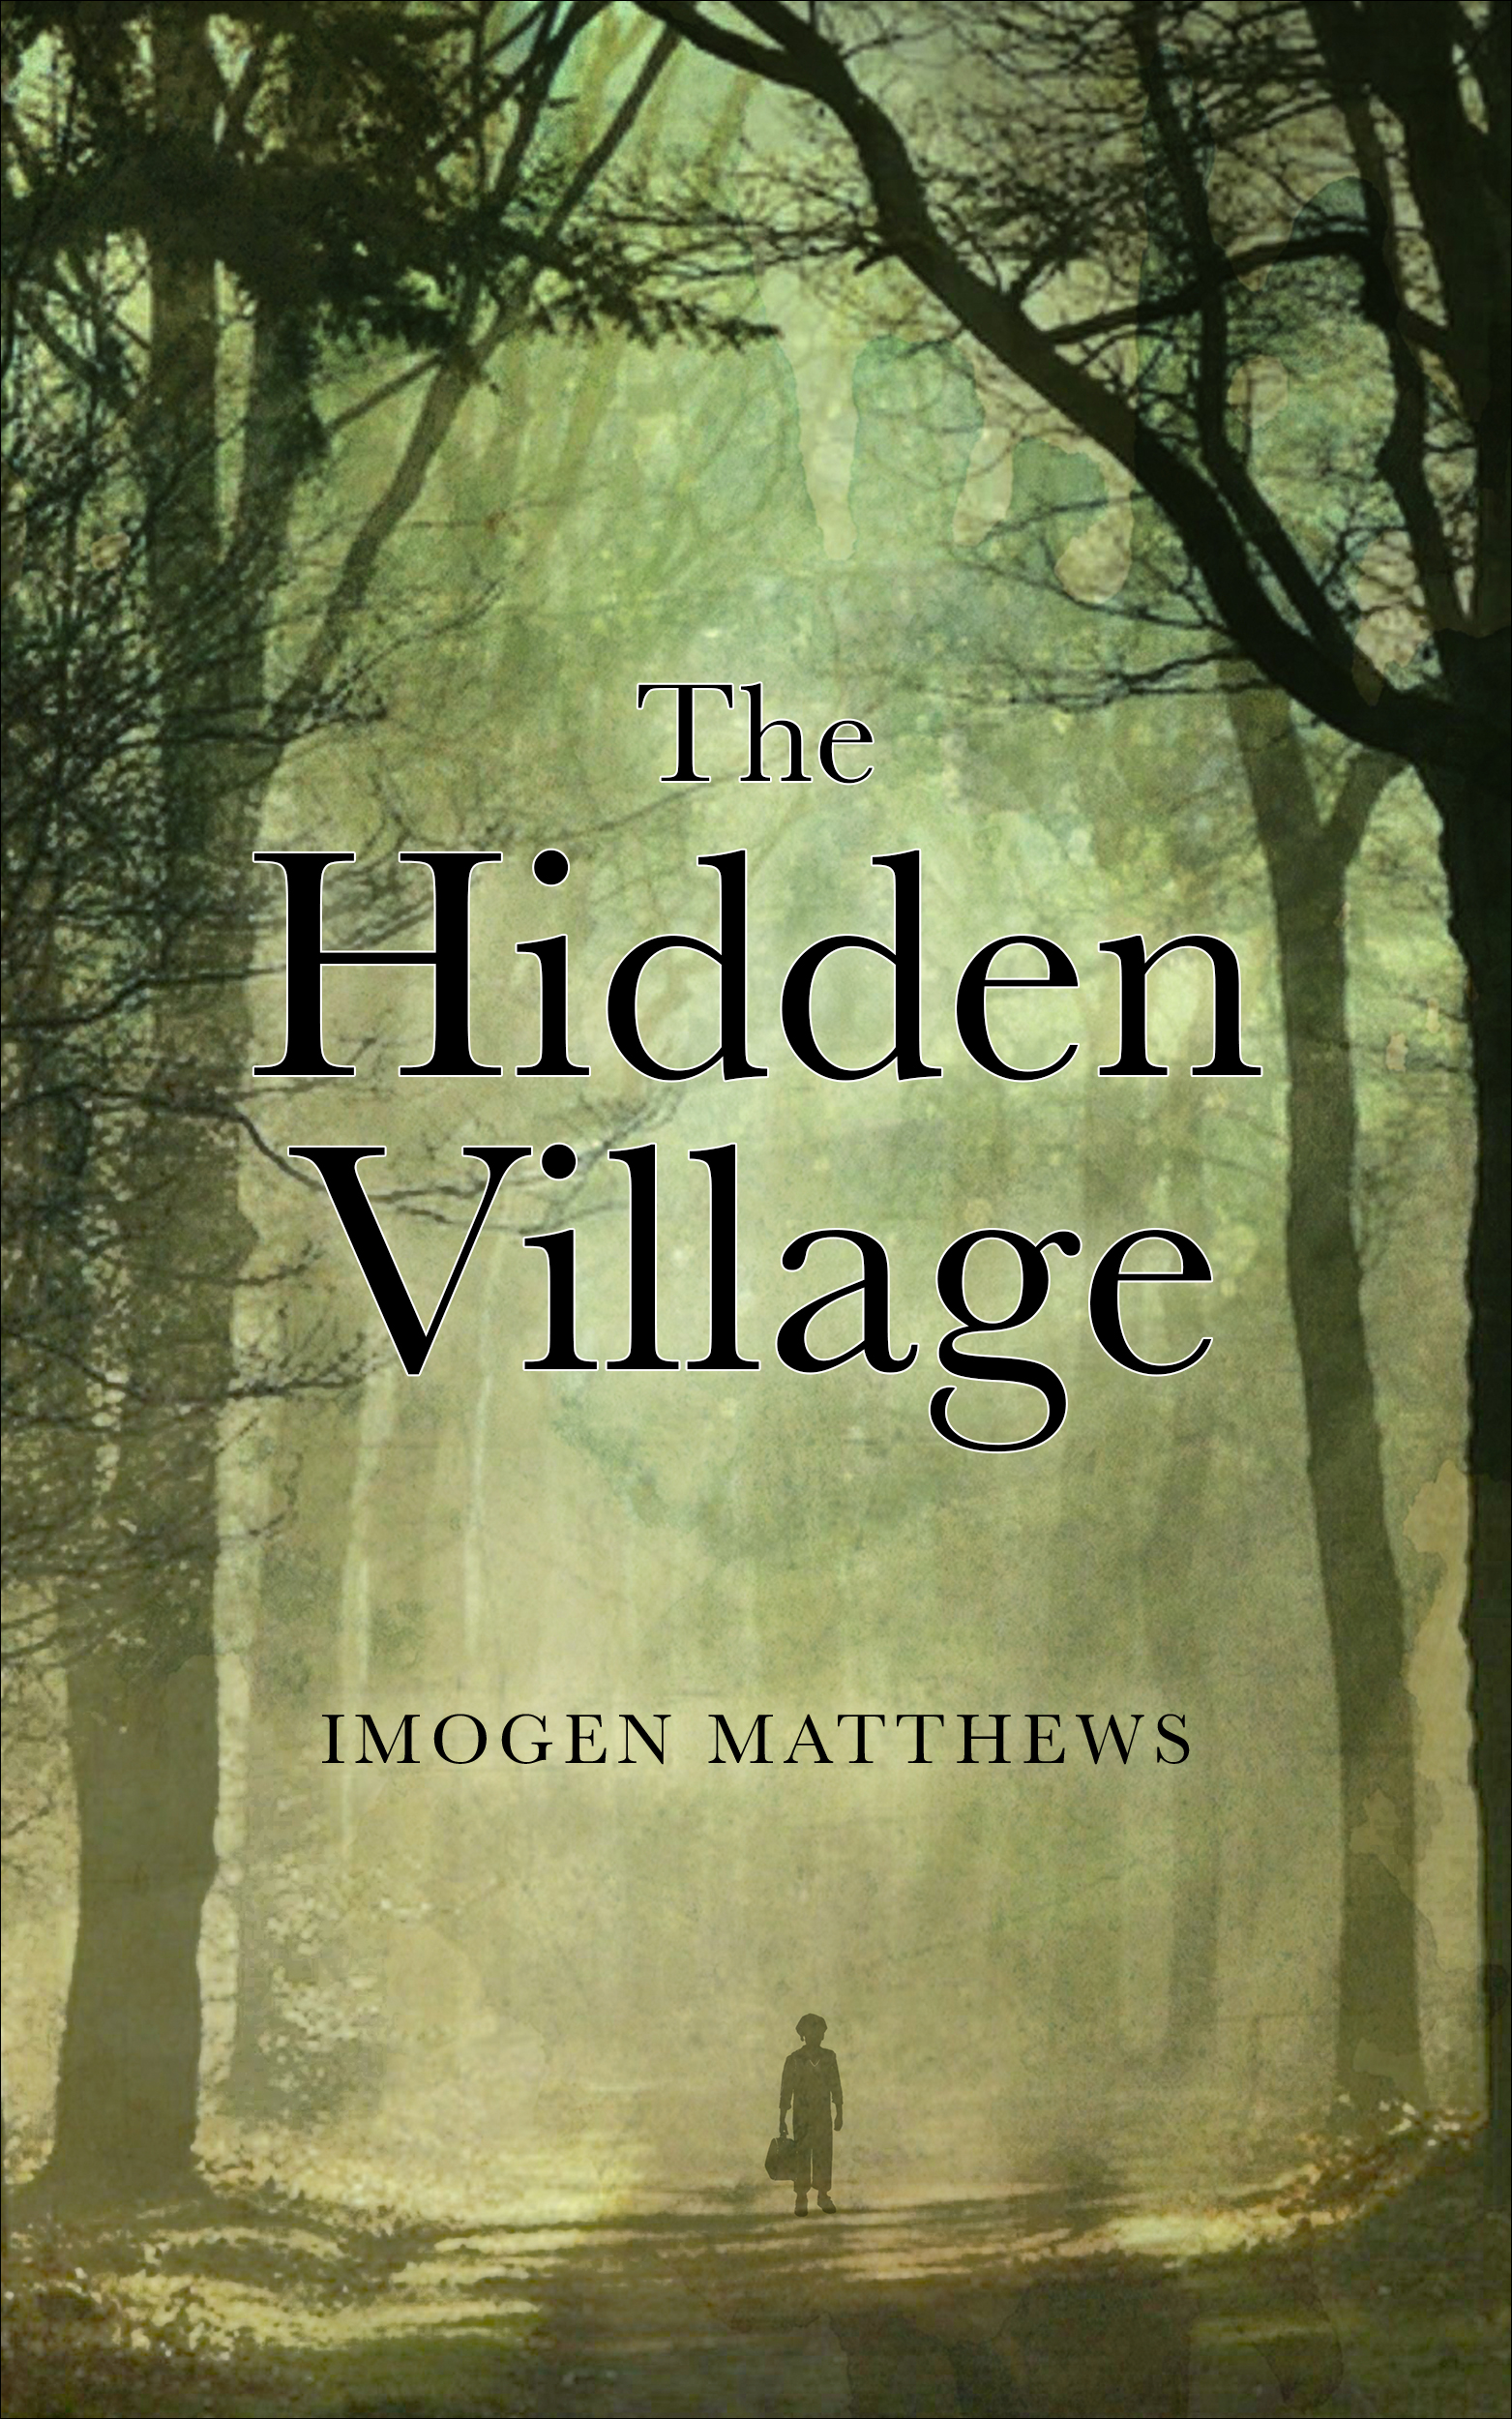 The hidden village